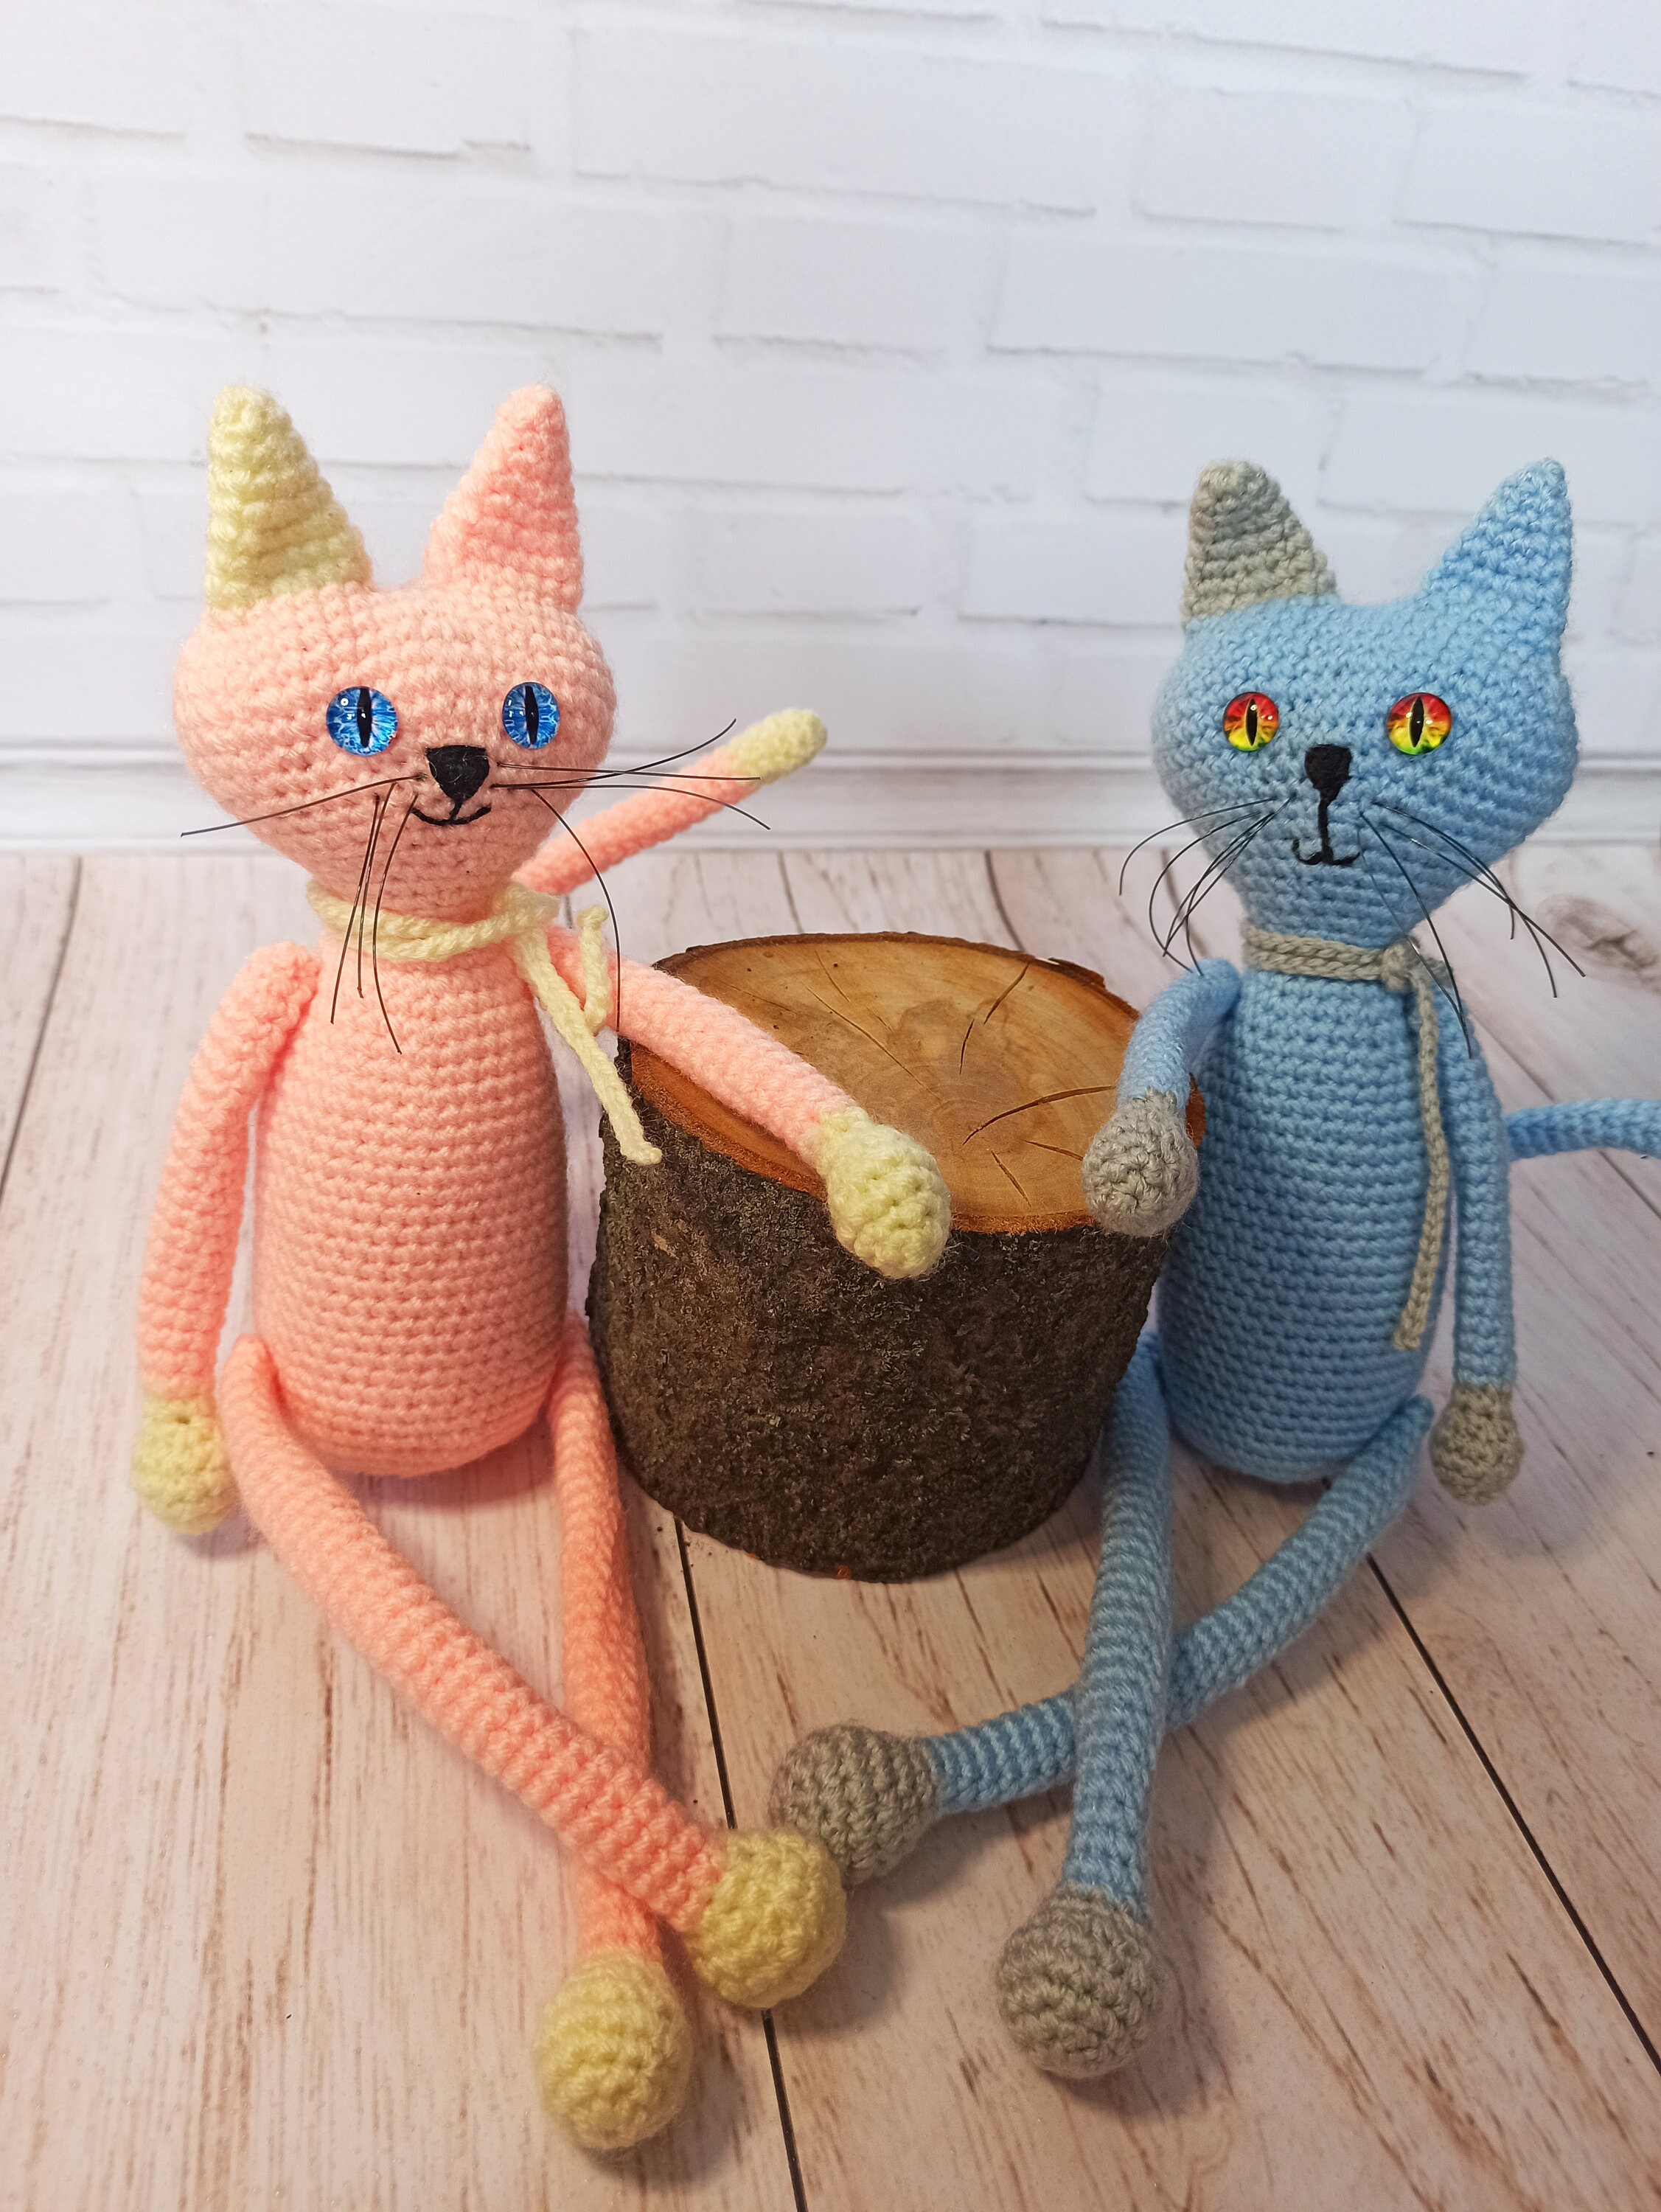 Playing Cats PDF Amigurumi Crochet Pattern